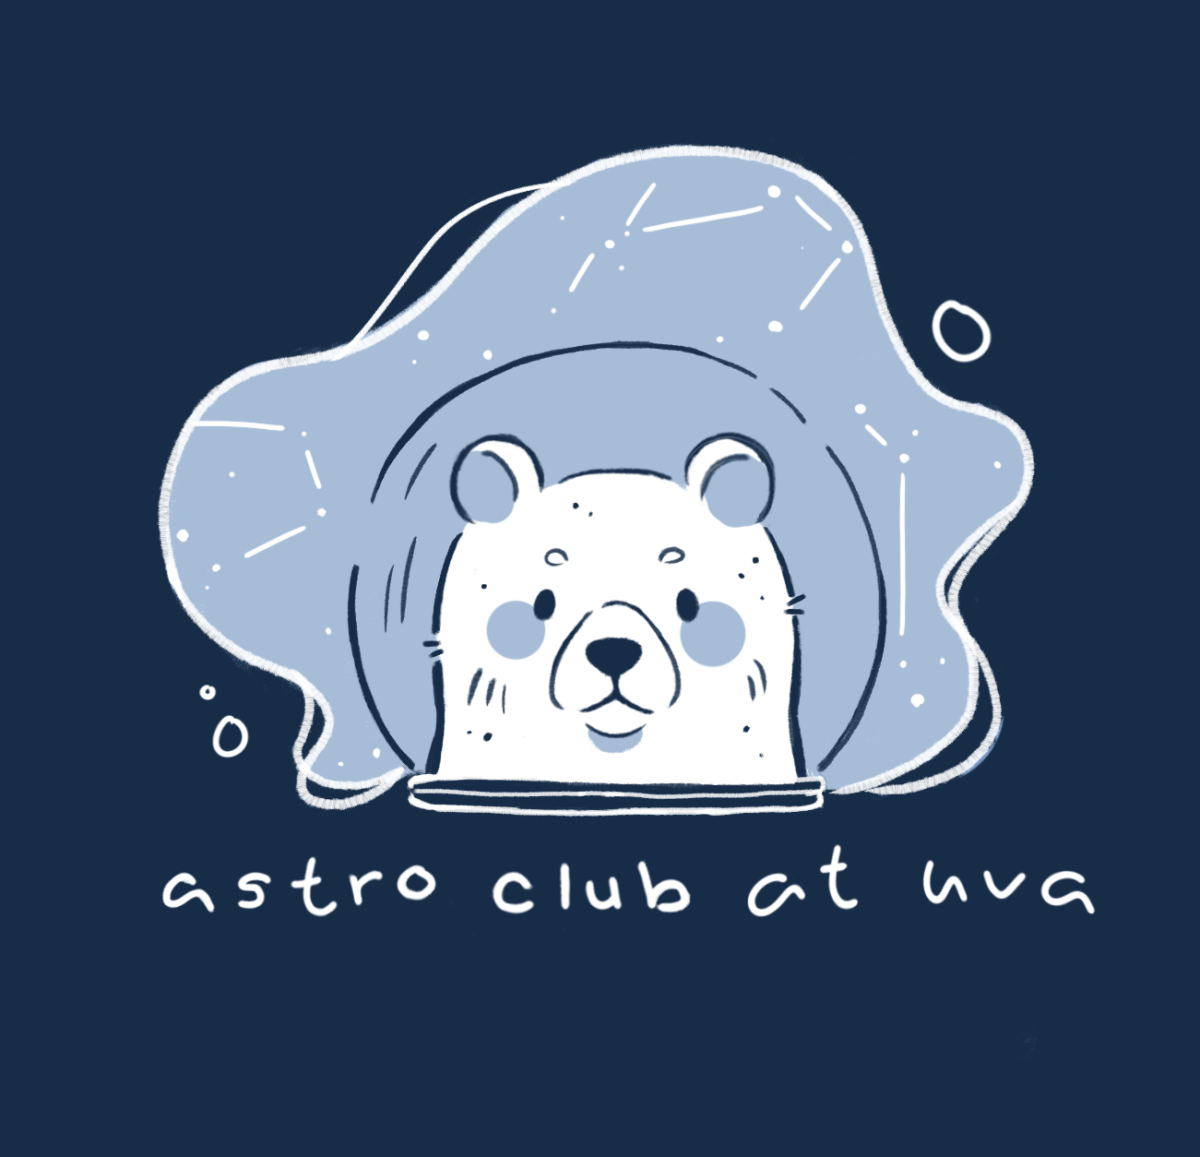 Astro club logo